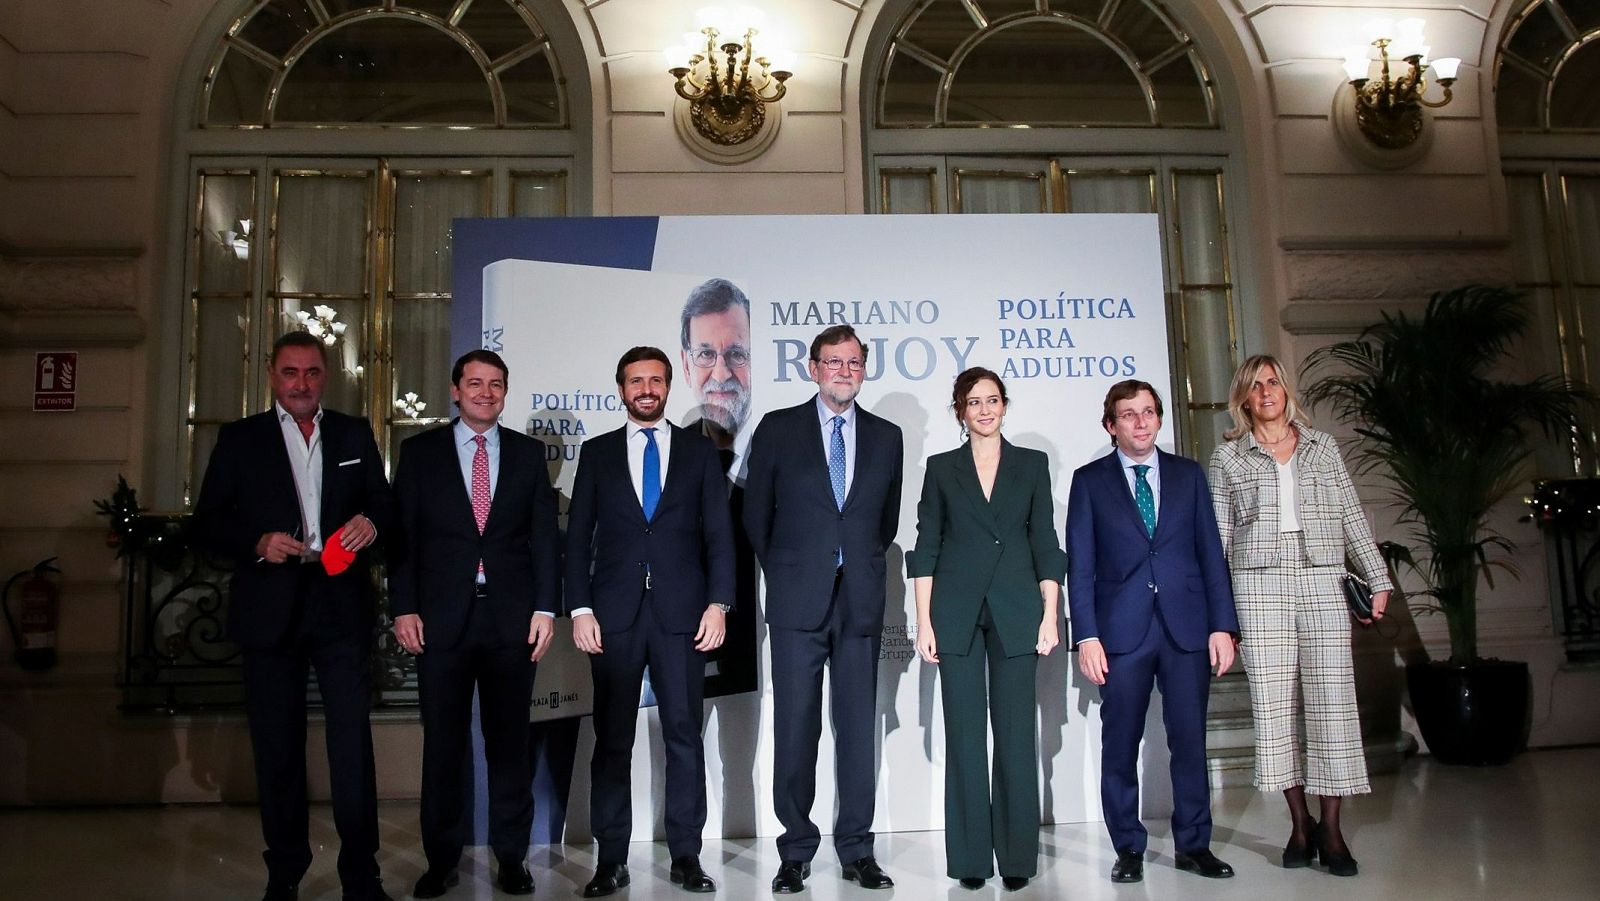 Rajoy consigue 'unir' a Ayuso y Casado en mitad de la crisis interna del PP